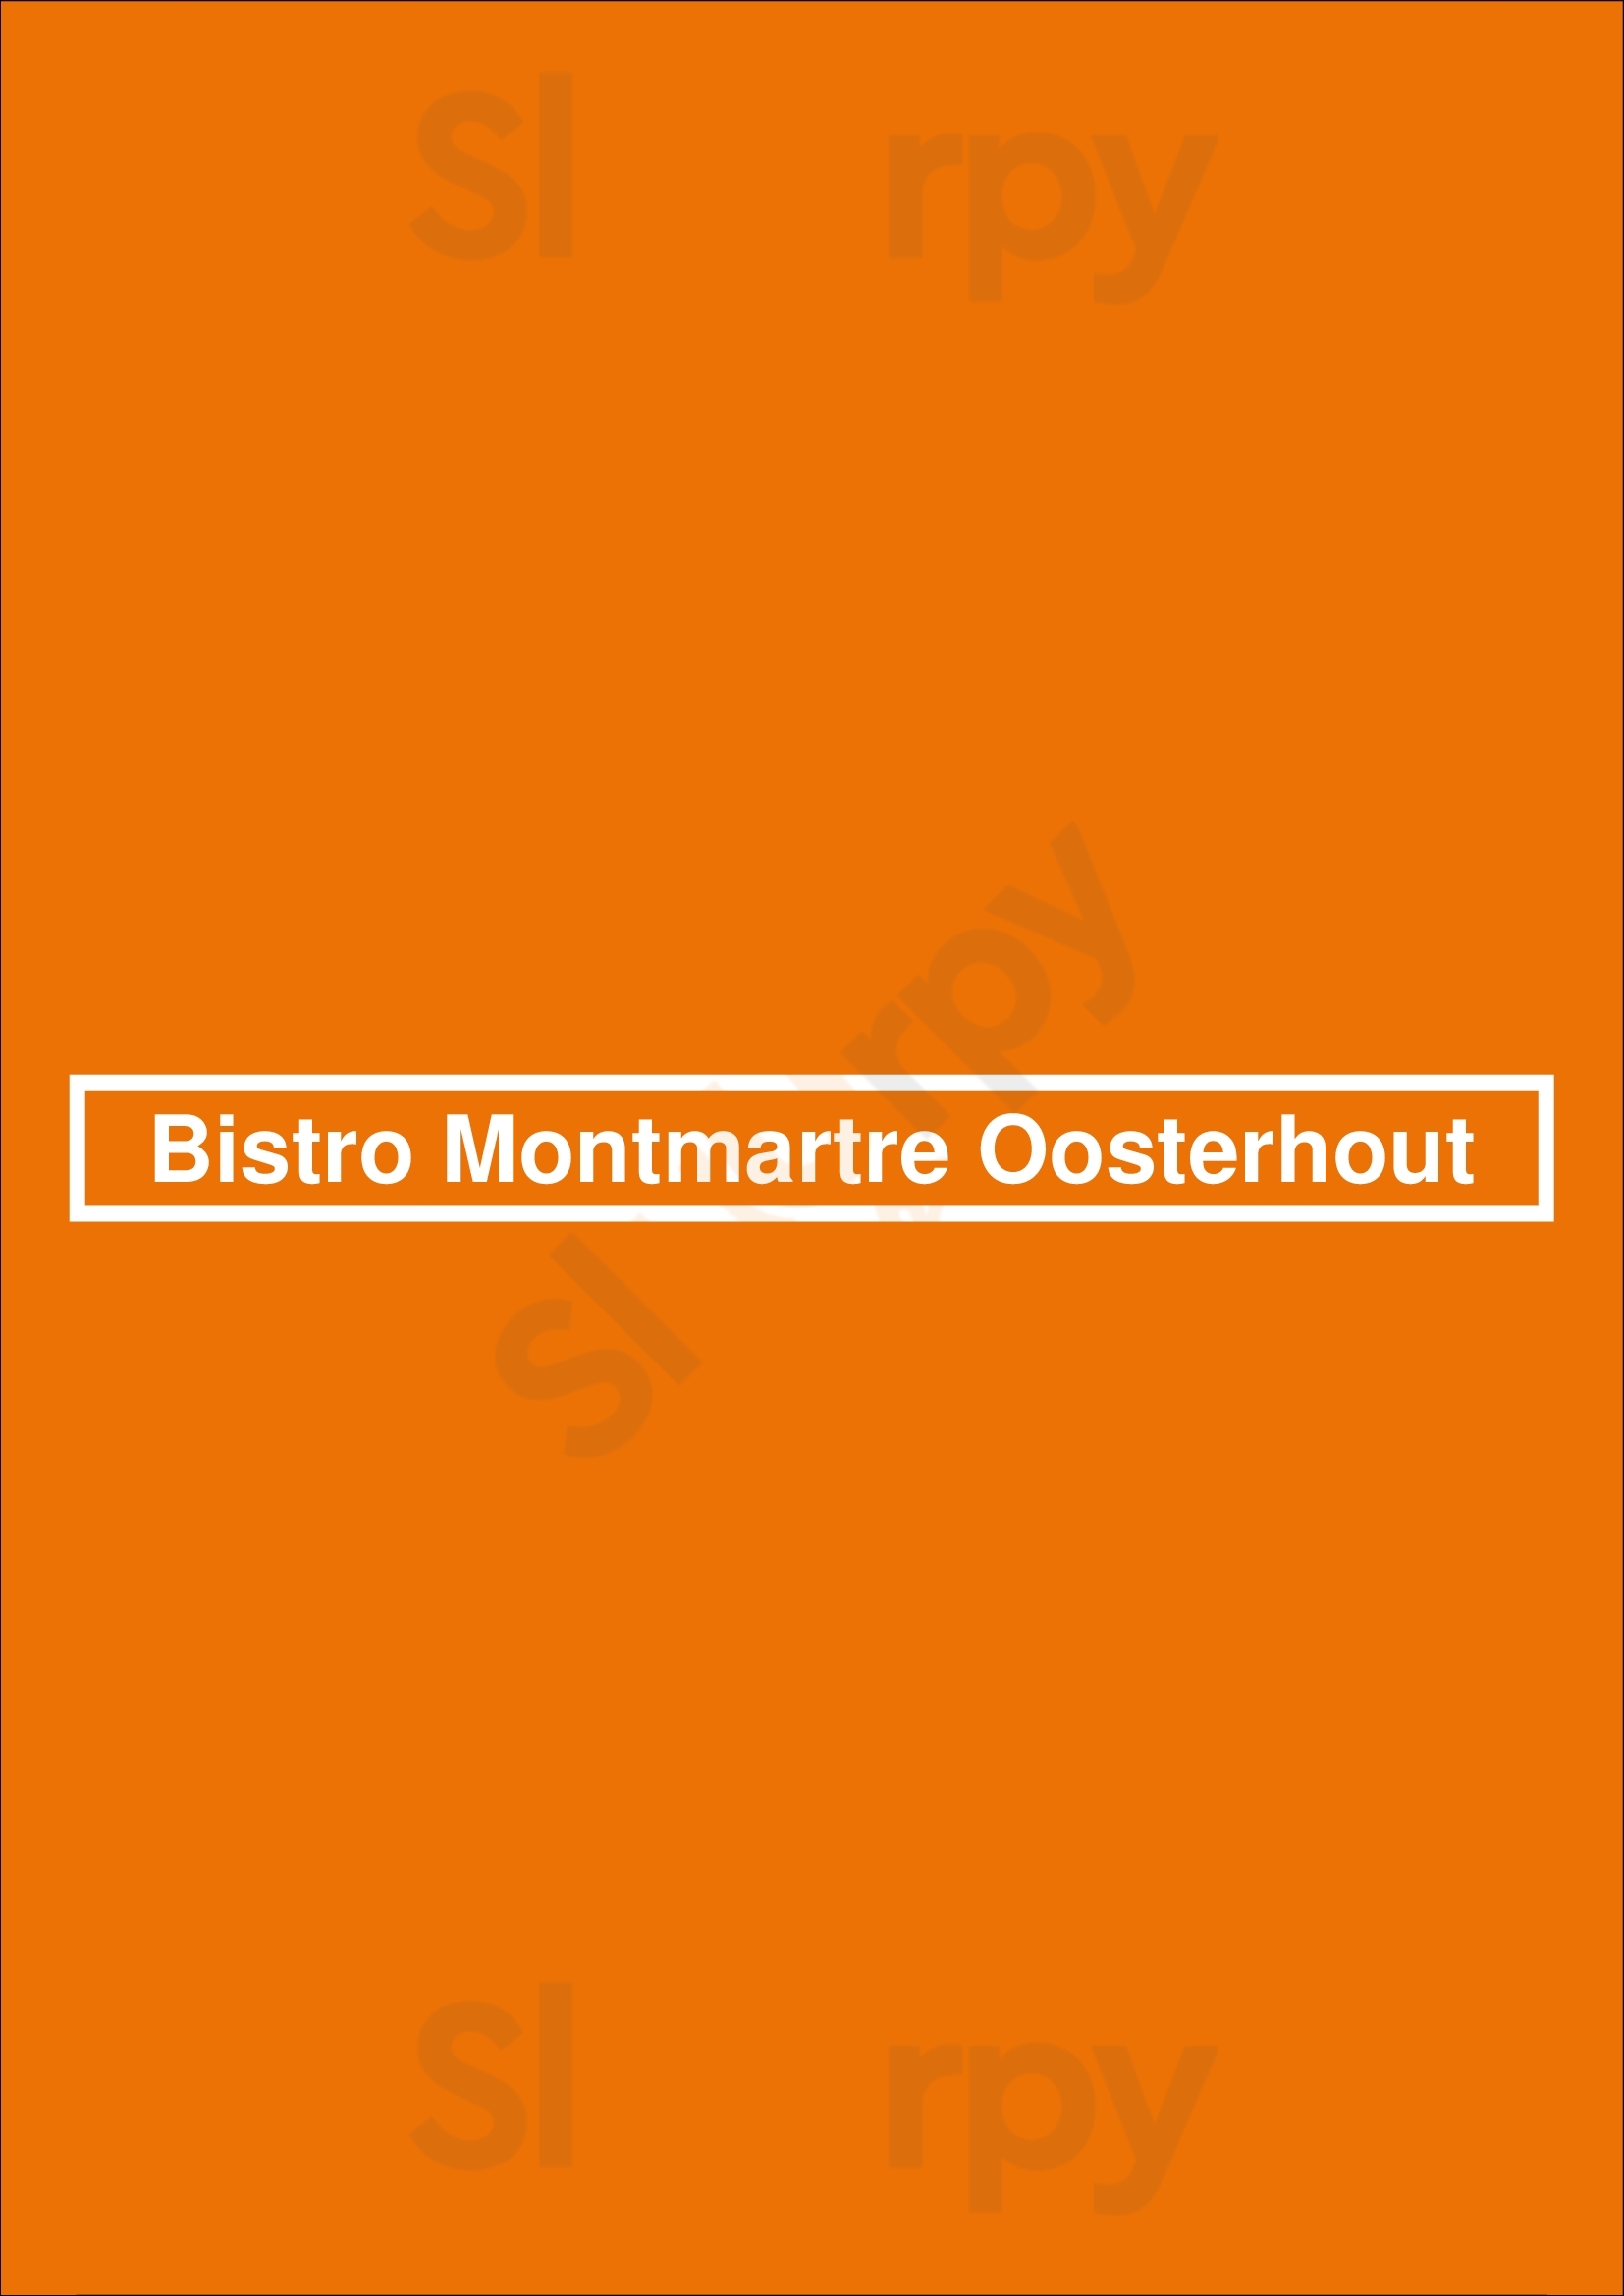 Bistro Montmartre Oosterhout Oosterhout Menu - 1